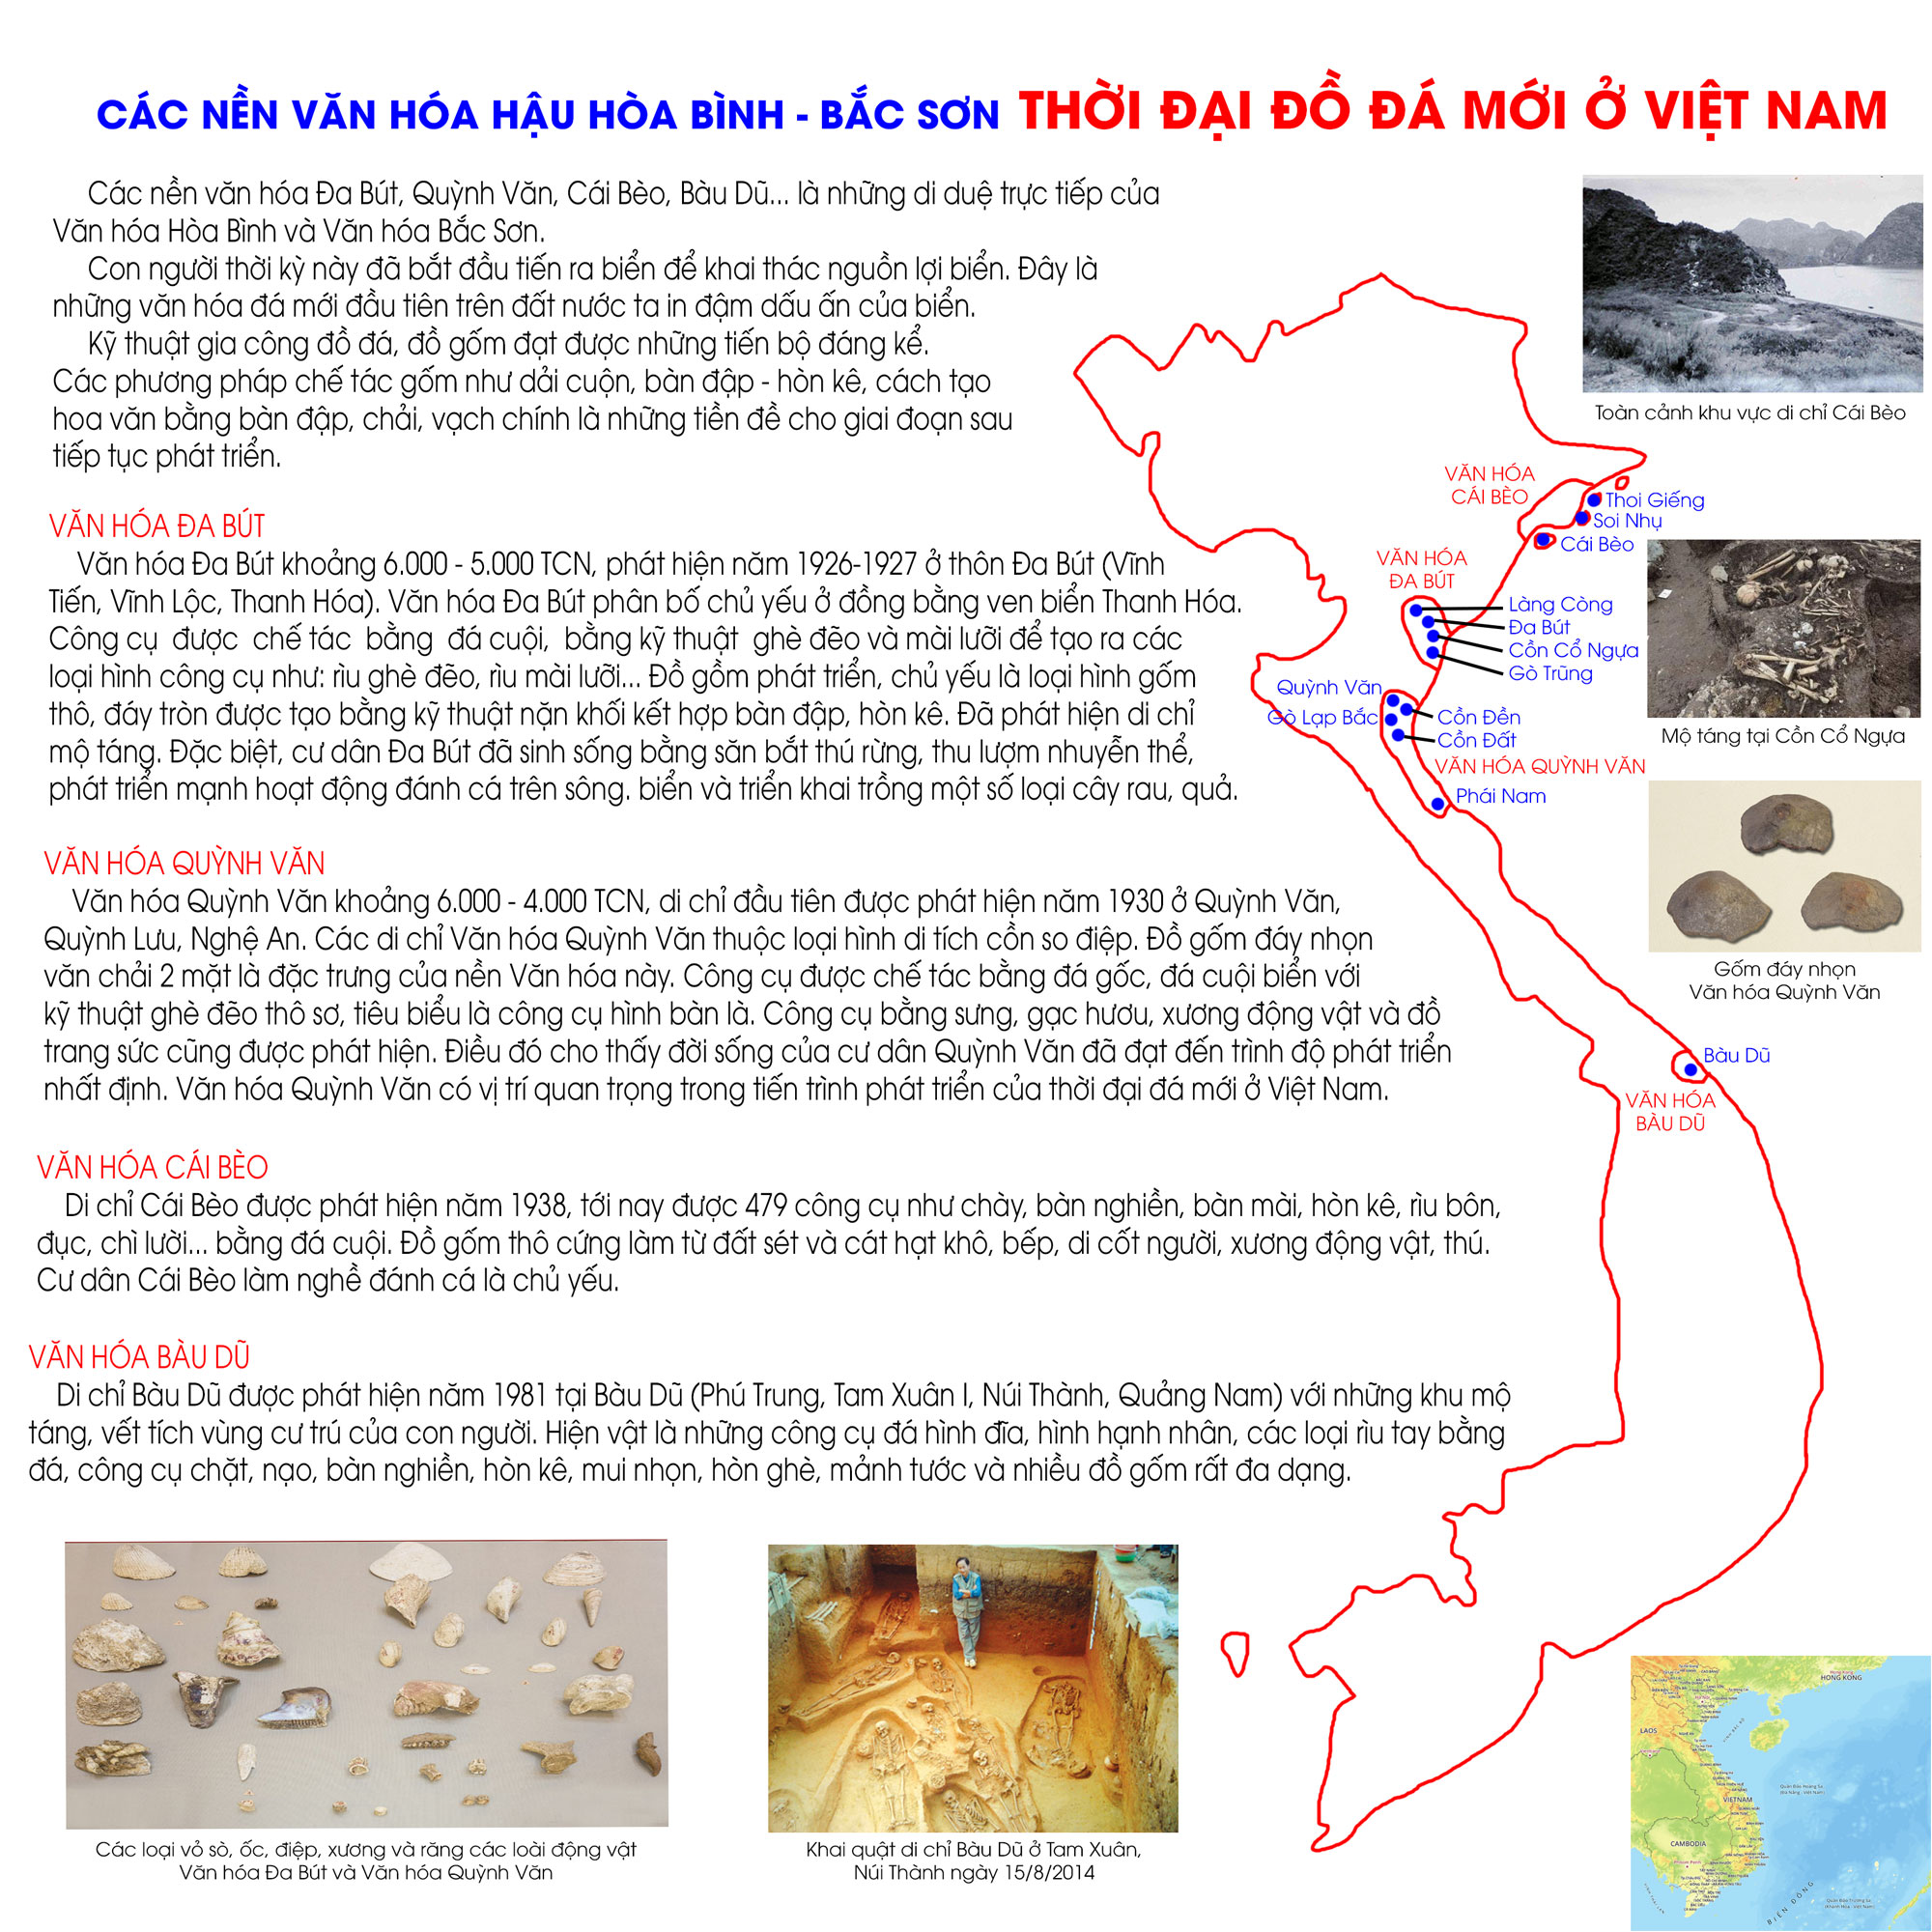 Thời đại đồ đá mới ở Việt Nam - Các nền văn hóa Hậu Hòa Bình, Bắc Sơn